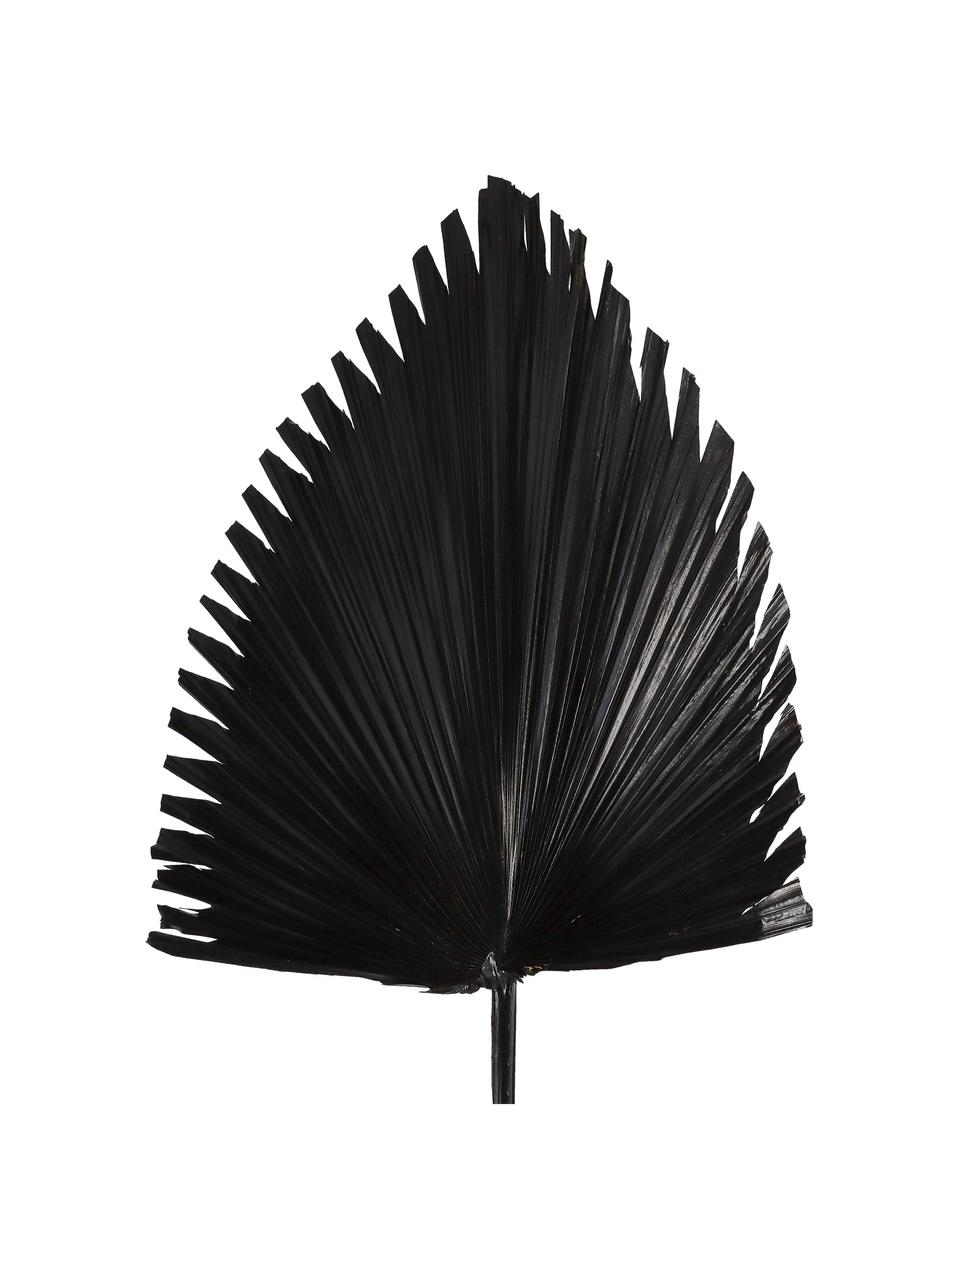 Dekoracyjny liść palmowy, Poliester, Czarny, S 40 x W 85 cm